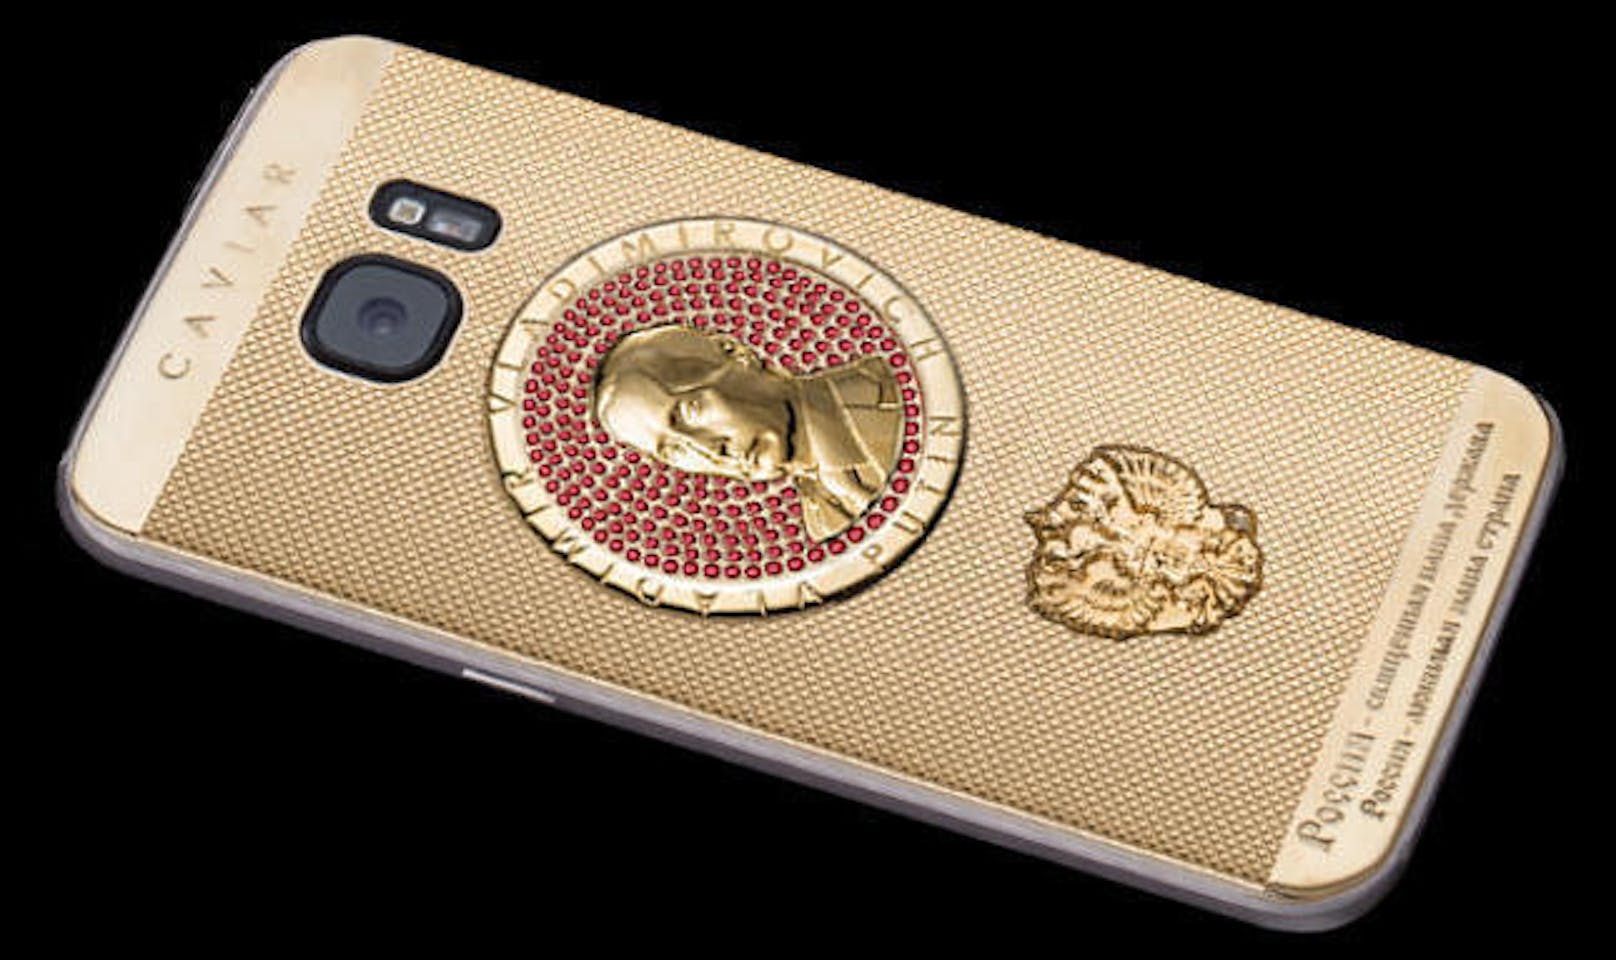 Die russische Firma Caviar hat sich zum Ziel gesetzt, Smartphones mit teuren Materialien und Verzierungen zu veredeln. Das opulente Smartphone mit 32 GB kostet 1,79 Millionen Rubel, umgerechnet knapp 23.100 Euro. Hinter der Veredelung steckt übrigens ein Samsung Galaxy S7.